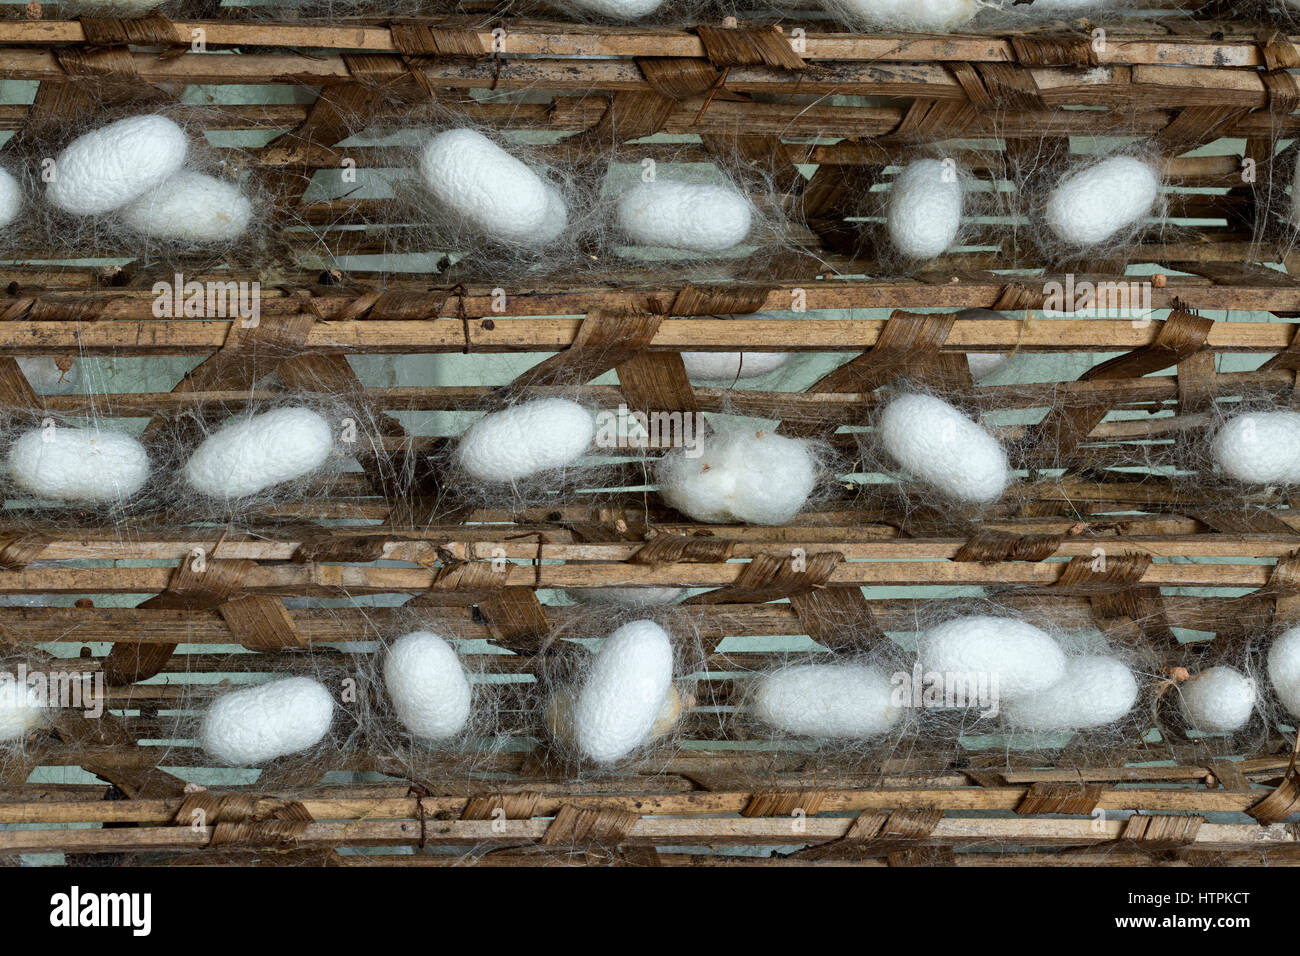 Seidenraupen-Kokons (Bombys Mori) auf Holzrahmen, Produktion von Seidenfäden. Stockfoto